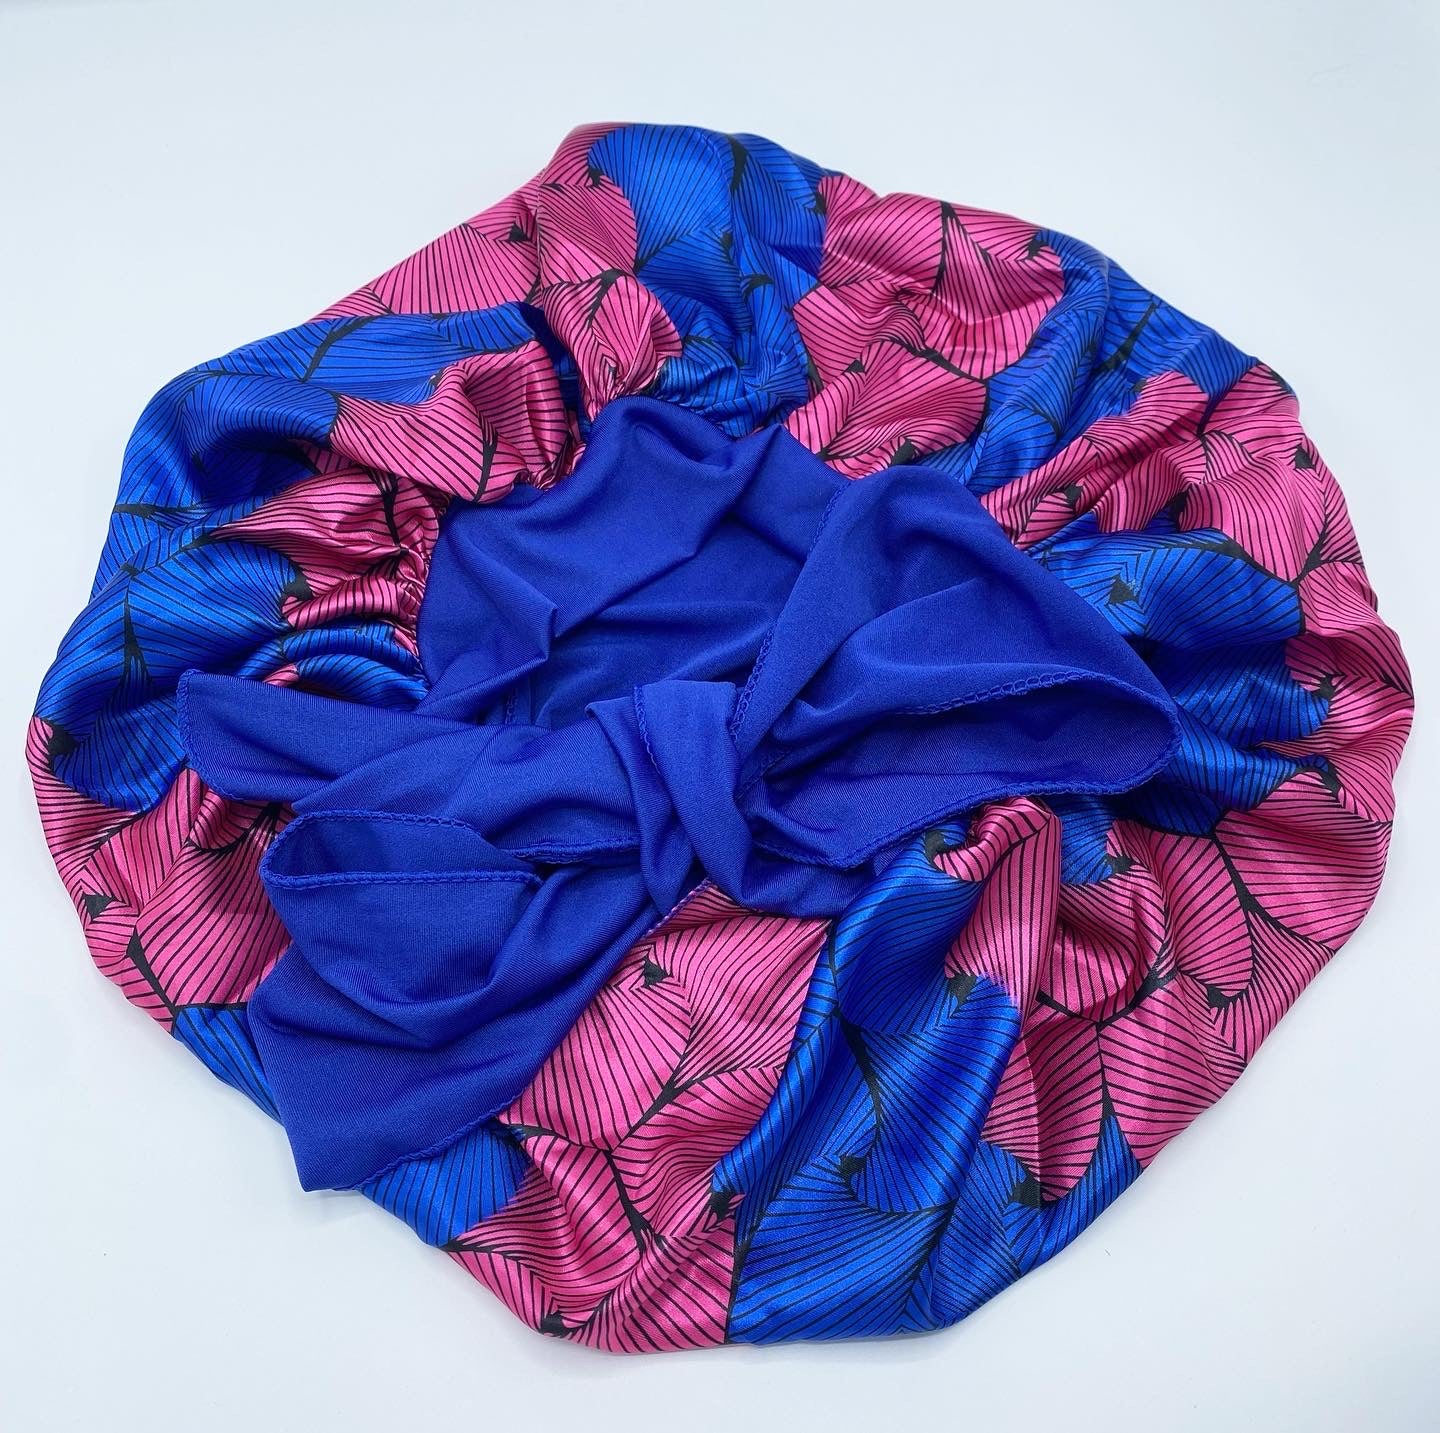 Satin Tie Bonnet - Pink & Blue Floral